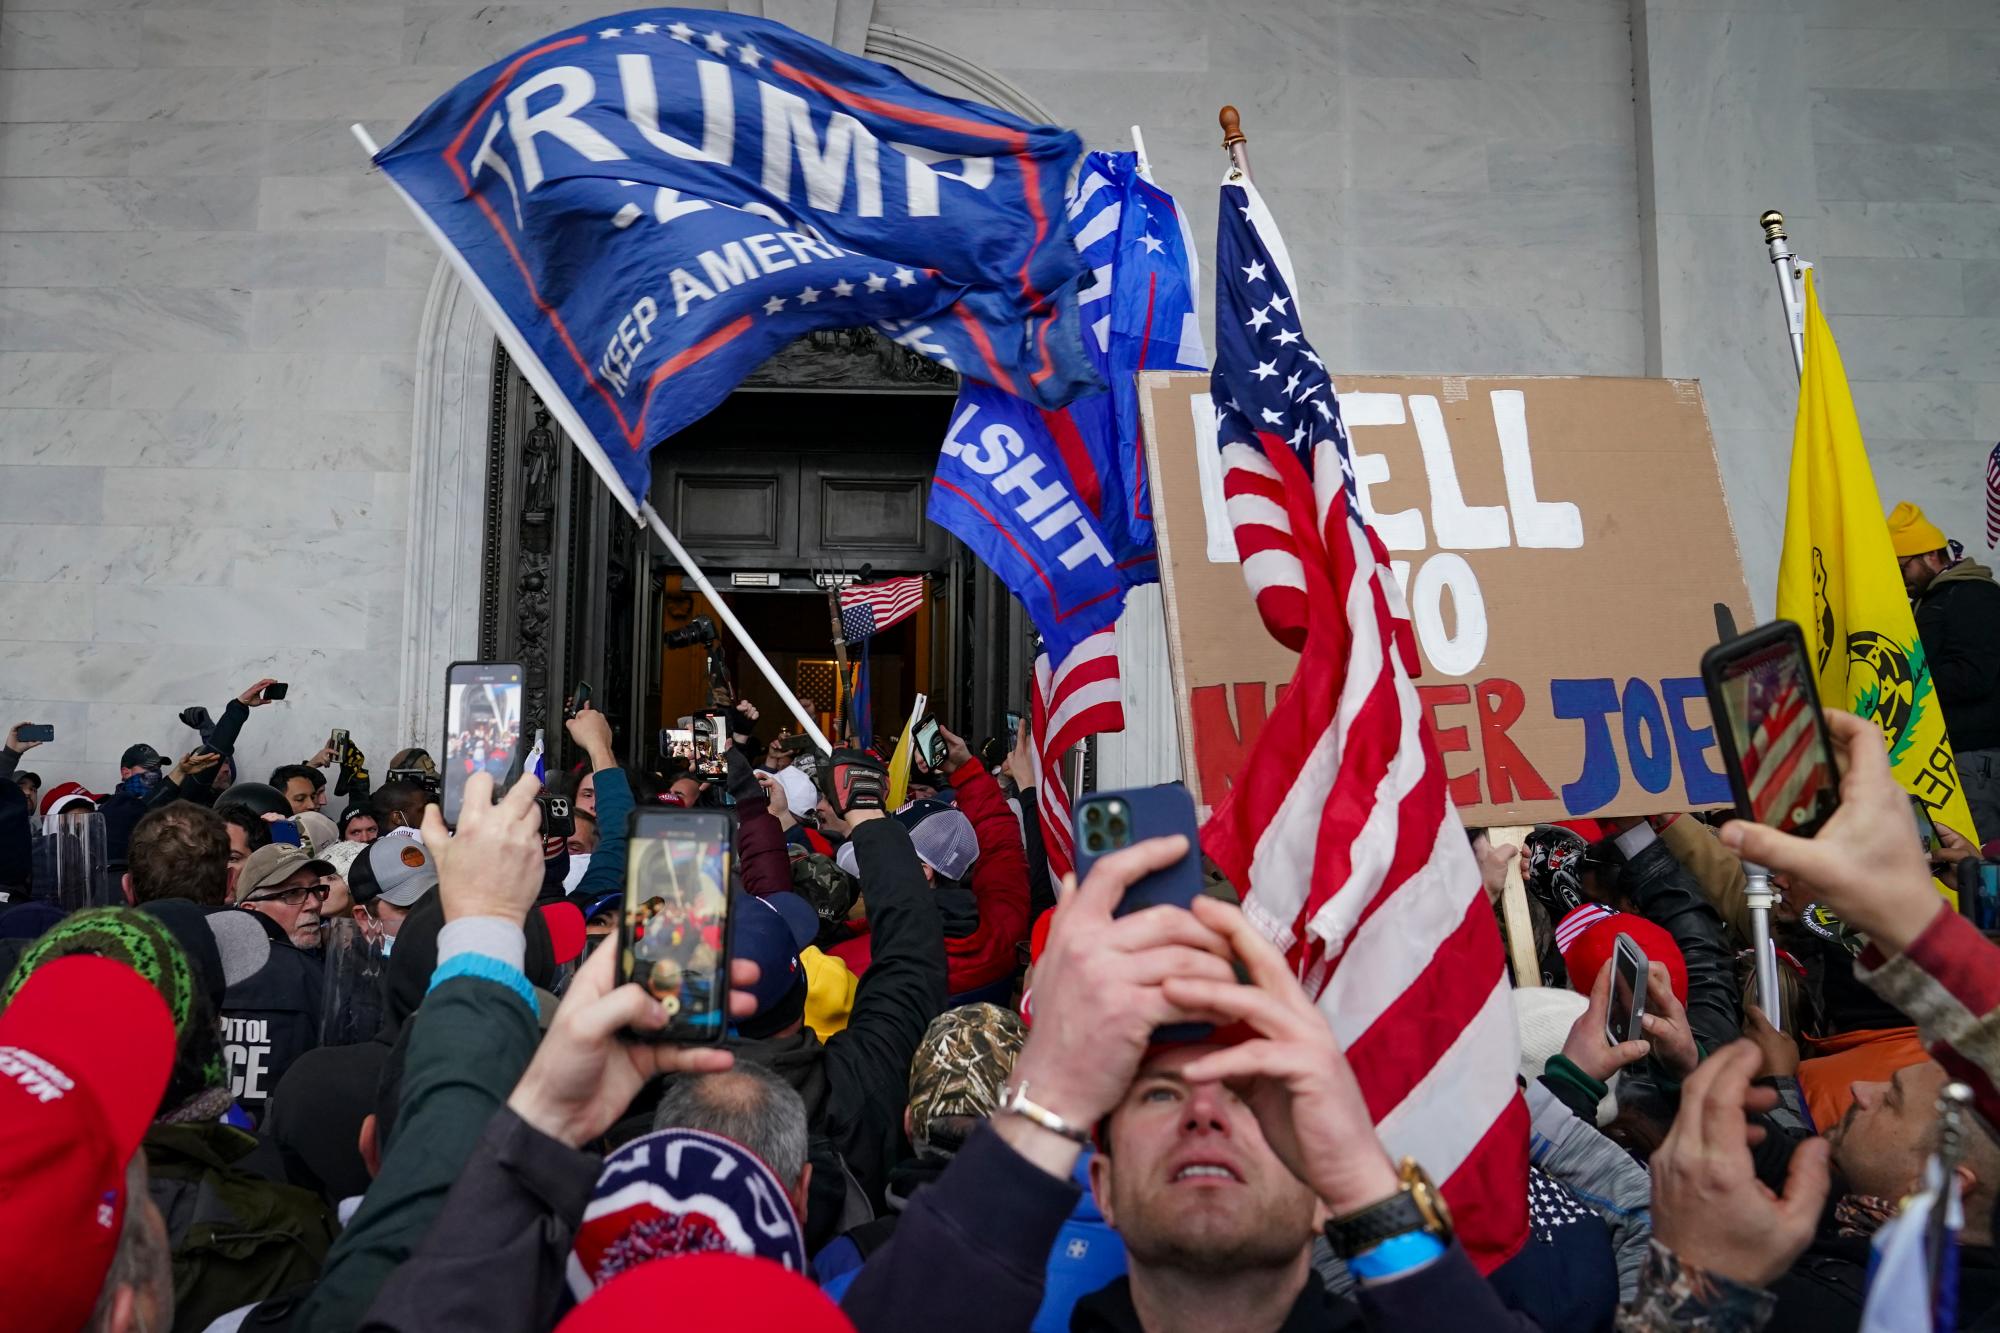  Los partidarios de Trump se reúnen frente al Capitolio, el miércoles 6 de enero de 2021 en Washington. Mientras el Congreso se prepara para afirmar la victoria del presidente electo Joe Biden, miles de personas se han reunido para mostrar su apoyo al presidente Donald Trump y sus acusaciones de fraude electoral.